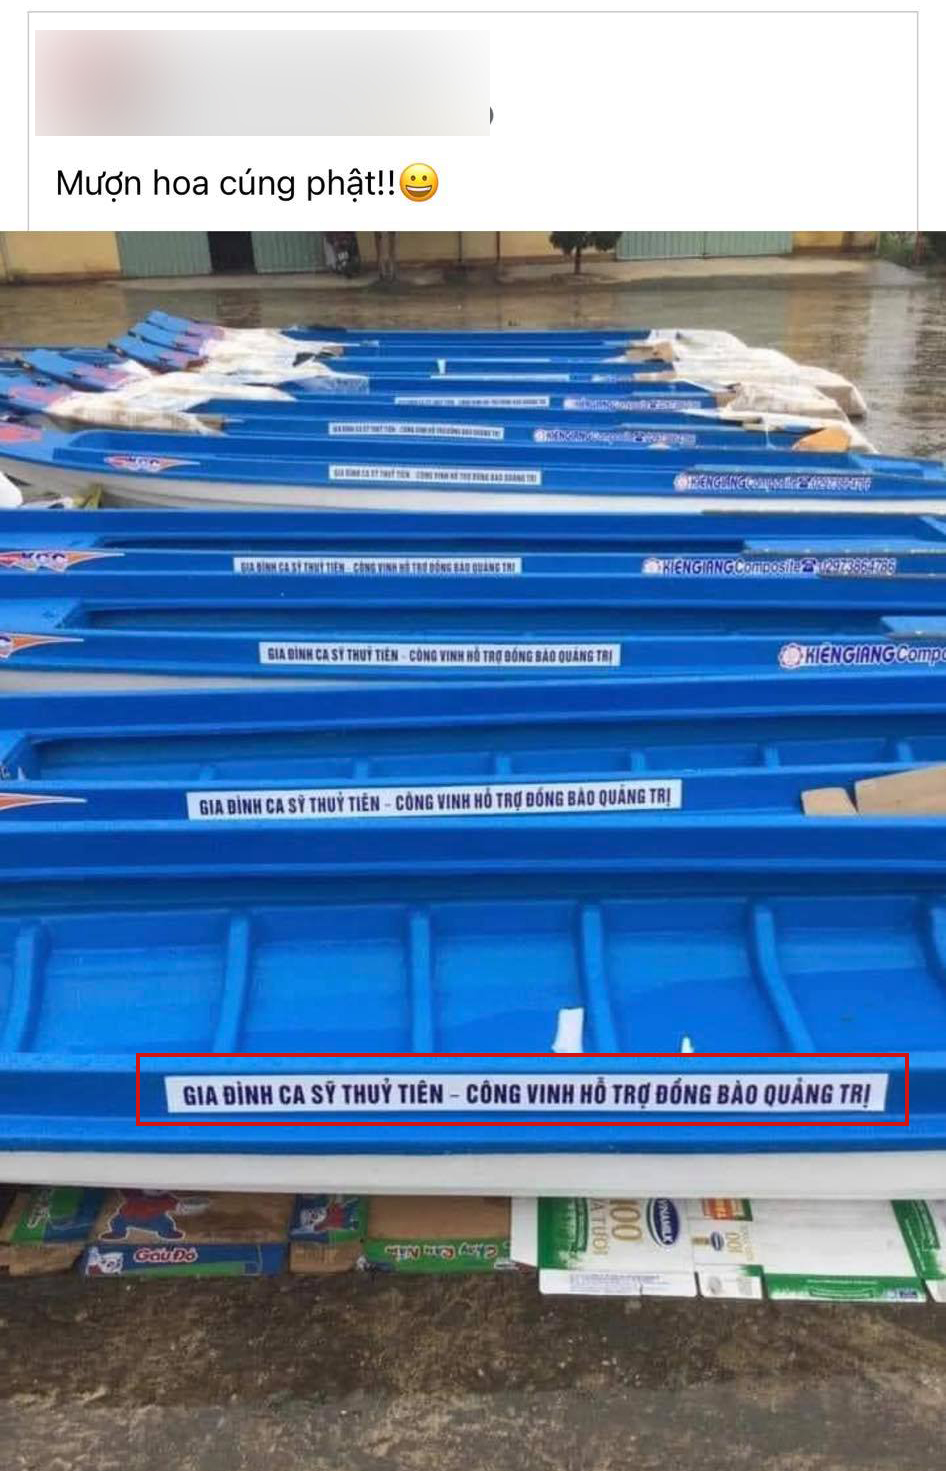 Hình ảnh những chiếc thuyền cứu trợ từ gia đình Thuỷ Tiên - Công Vinh đang gây tranh cãi trên mạng xã hội